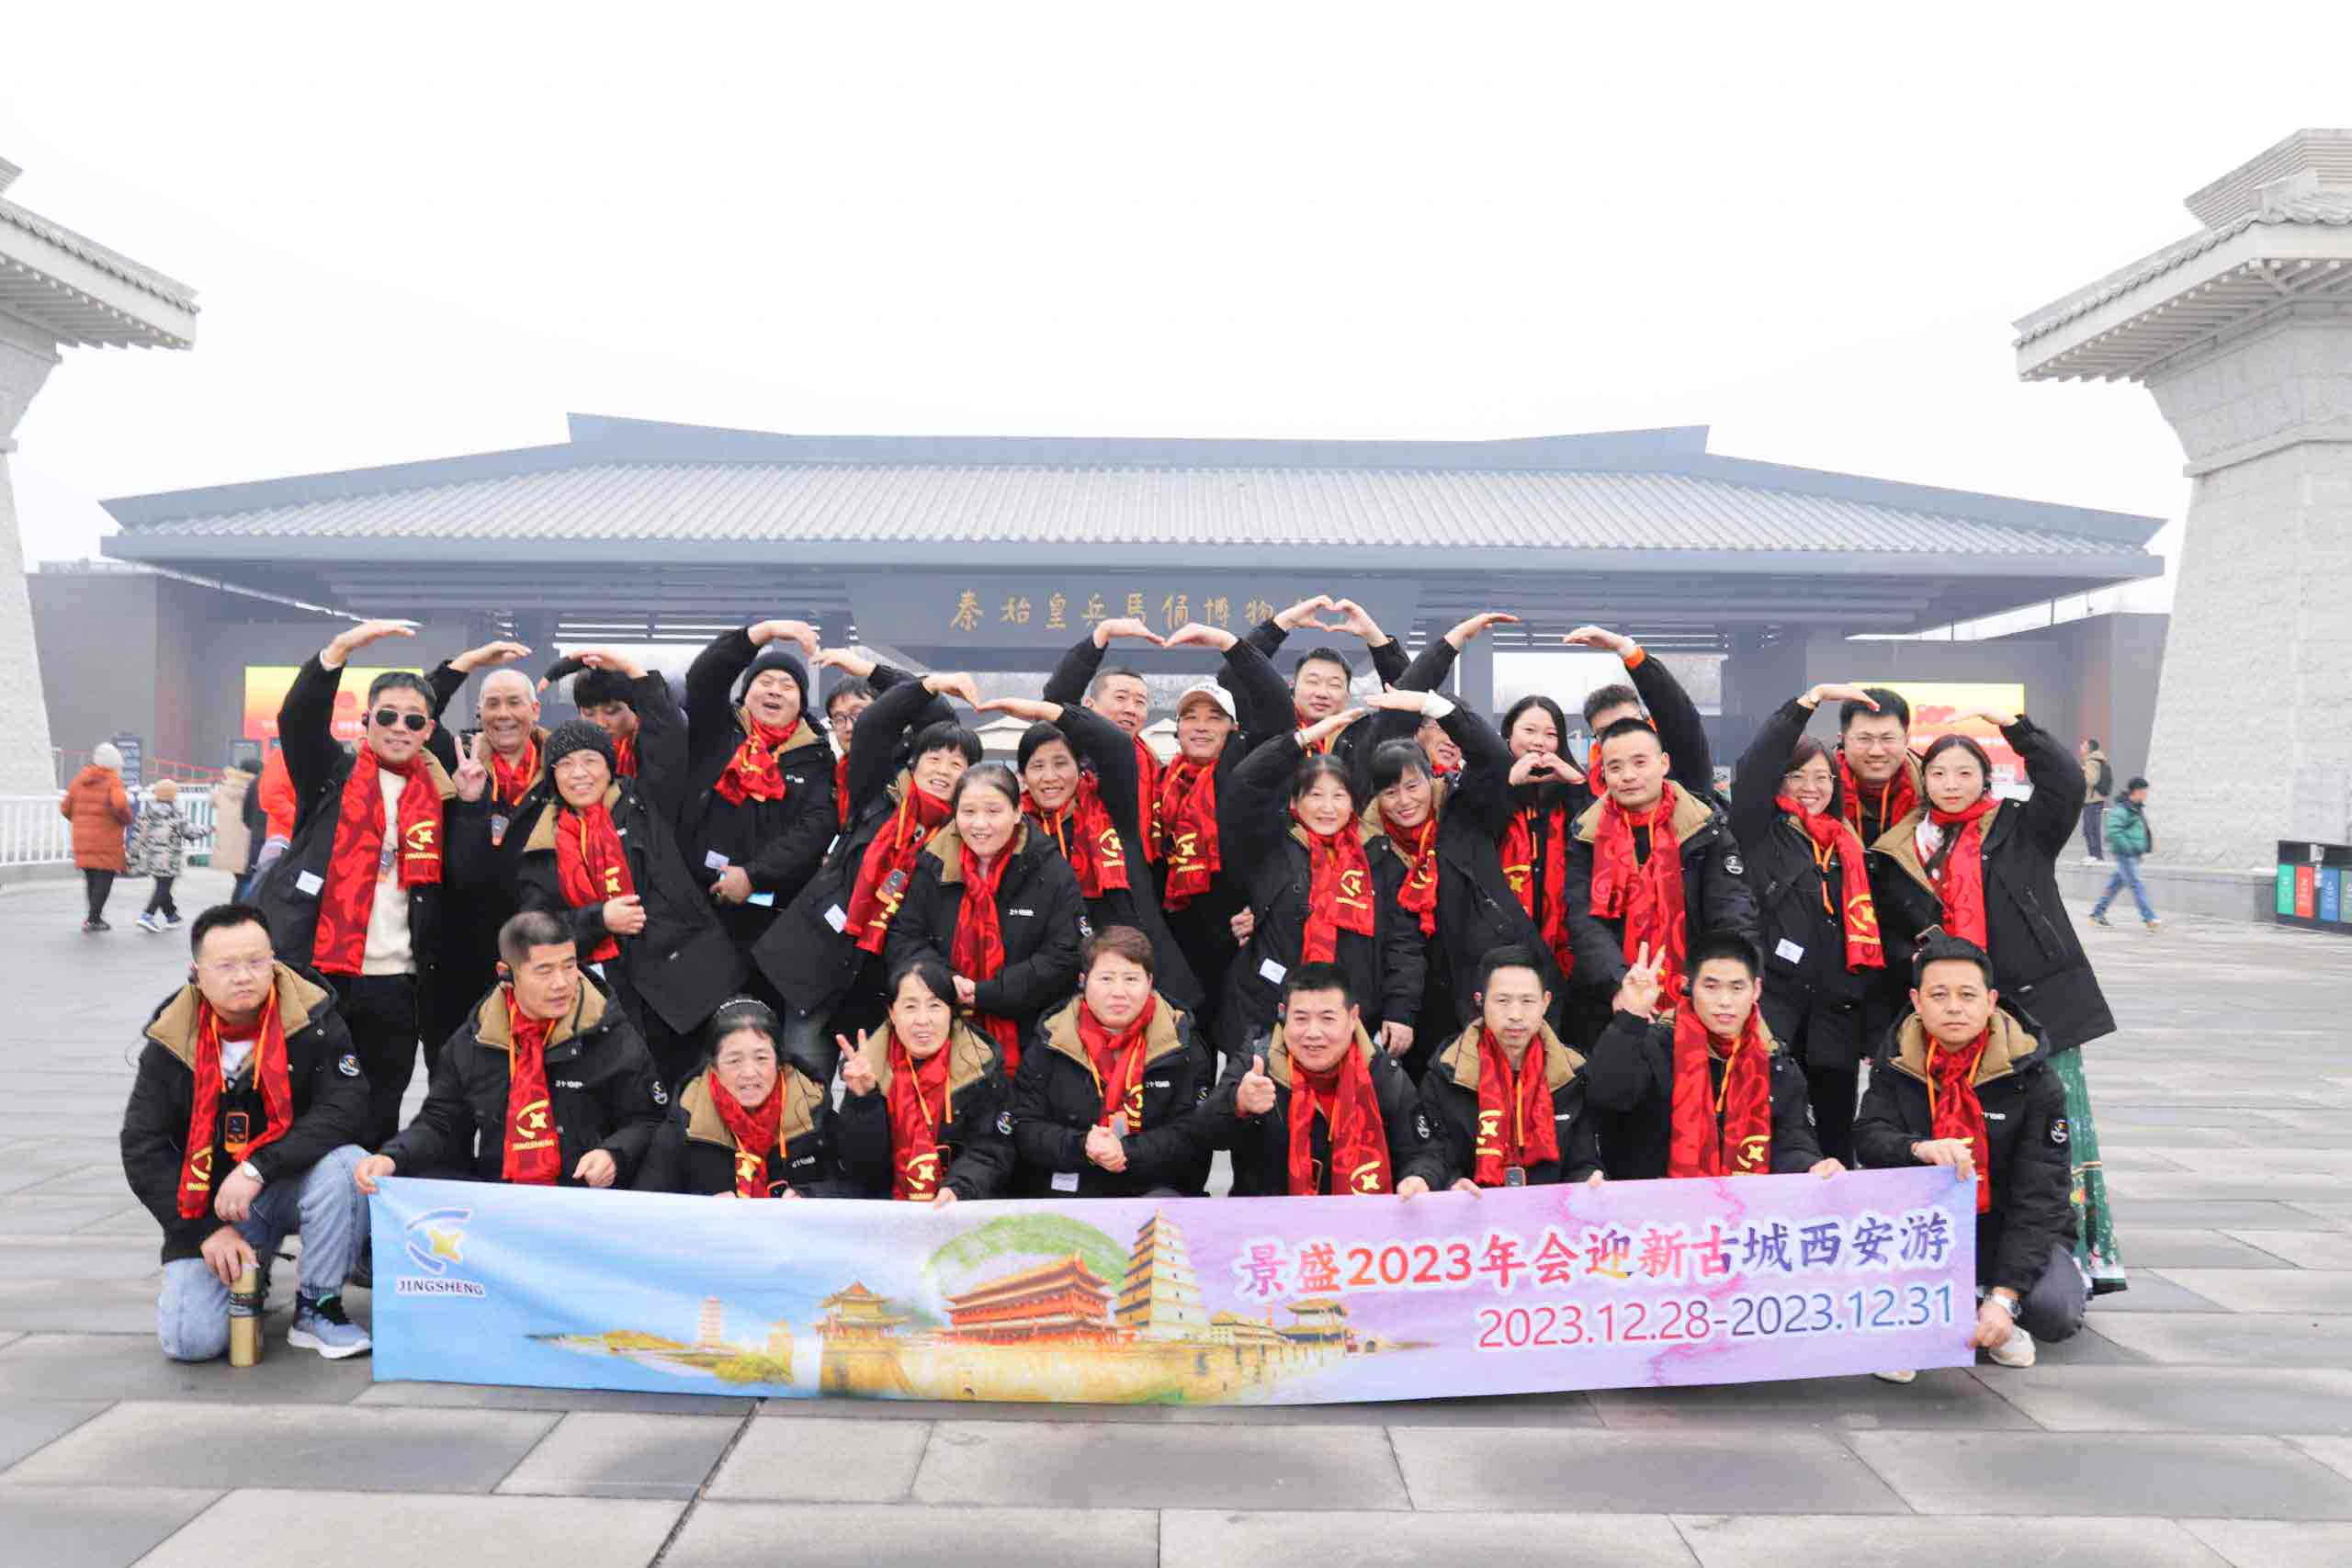 Şirket Çalışanları Xi'an Şehri Gezisinin Keyfini Çıkarıyor